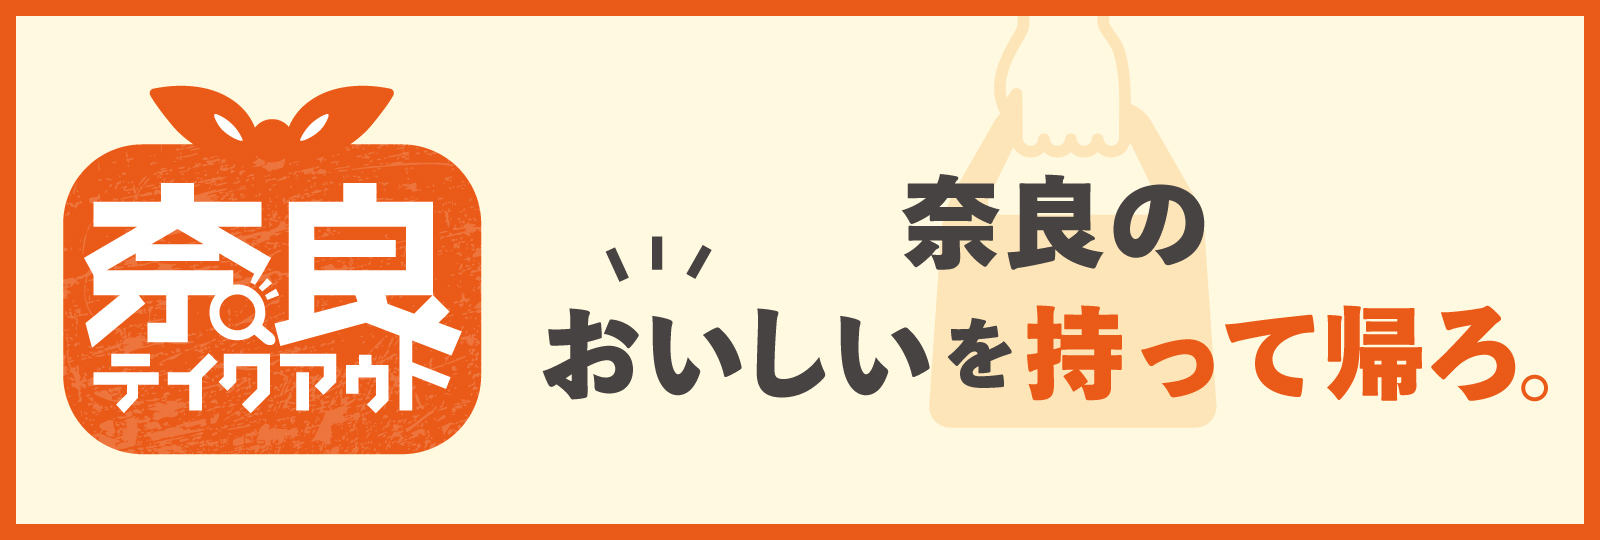 奈良の食を食べて飲食店を応援しましょう！